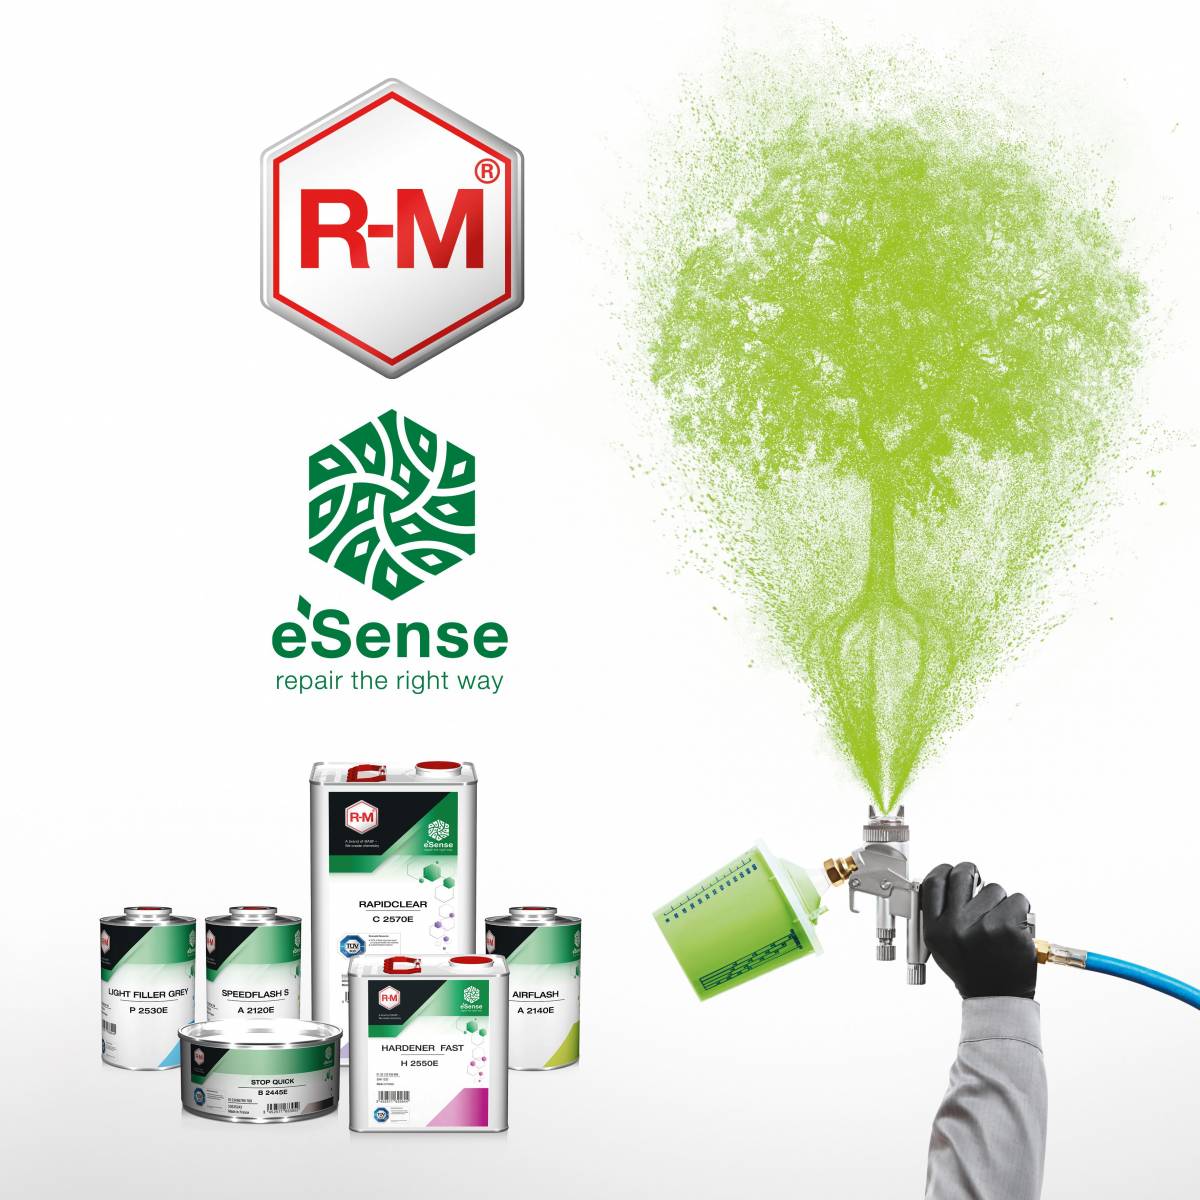 BASF Premiummarke R-M lanciert ressourcenschonende Produktlinie